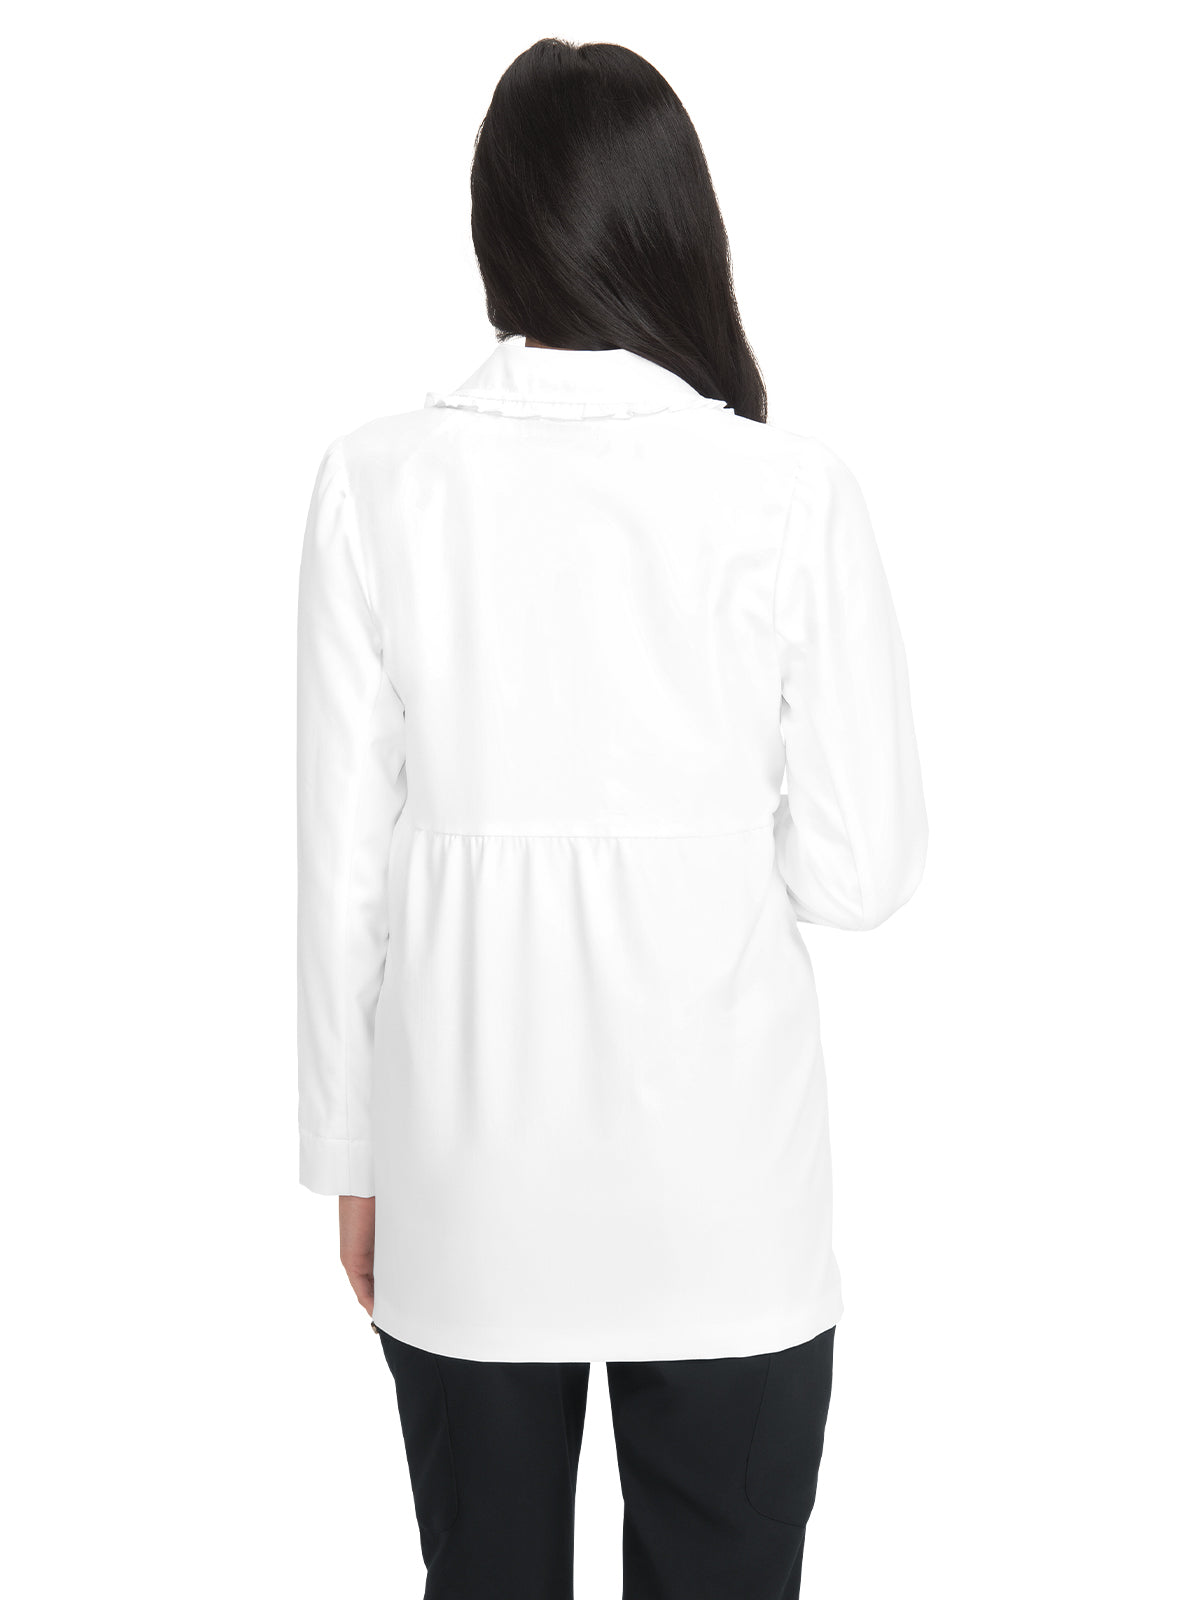 Women's Lab Coat - B403 - White